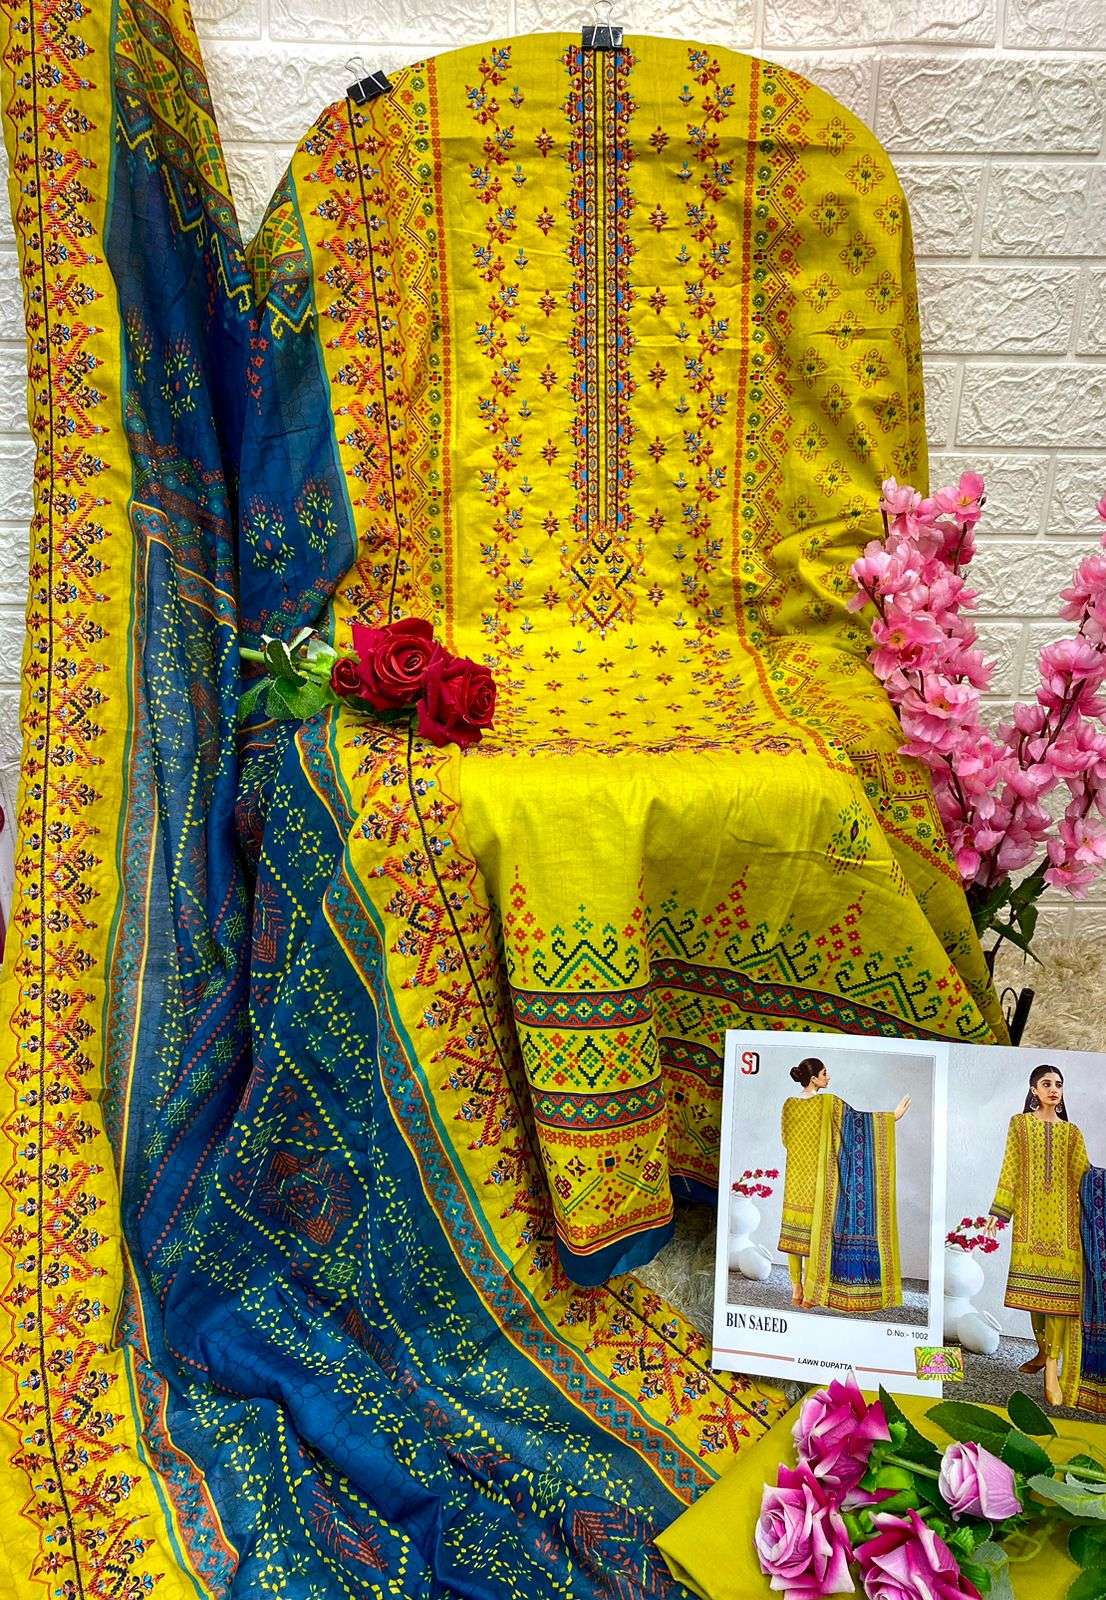 shraddha designer bin saeed 1001-1003 series lawn cotton designer salwar kameez in surat 